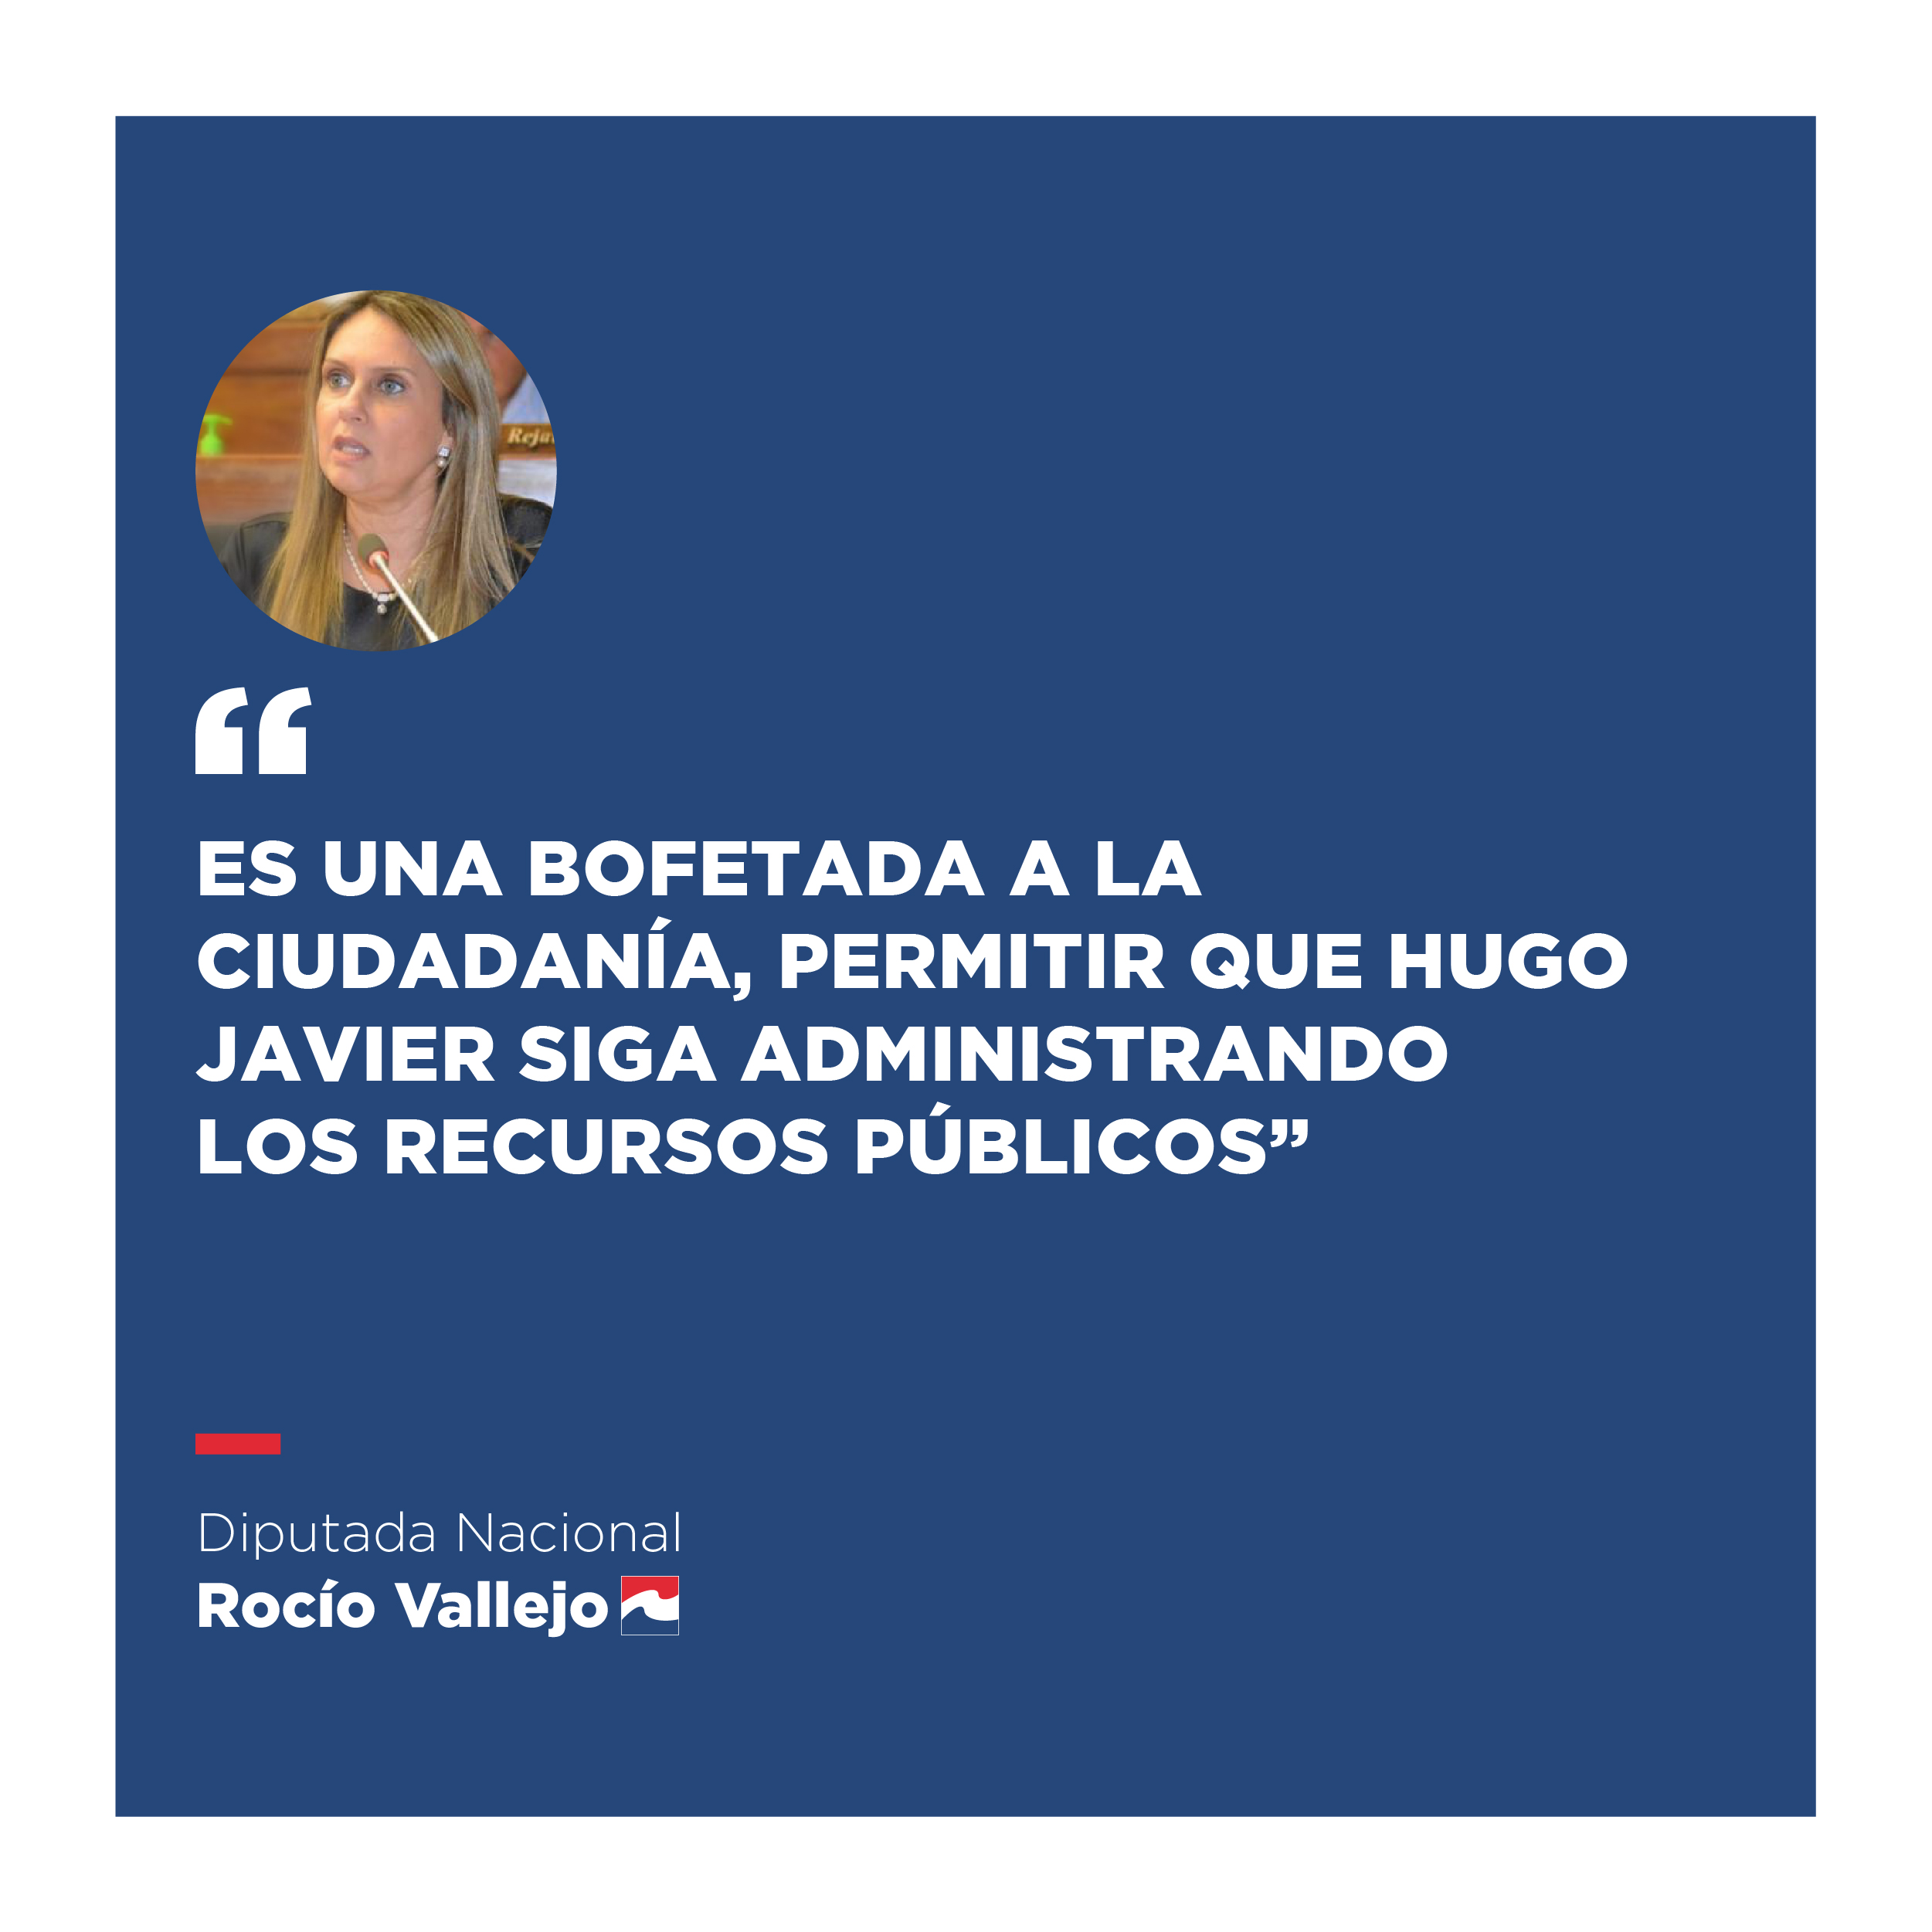 Es una bofetada a la ciudadanía, permitir que Hugo Javier siga administrando los recursos públicos. Dicho por: Rocío Vallejo, Diputada Nacional.